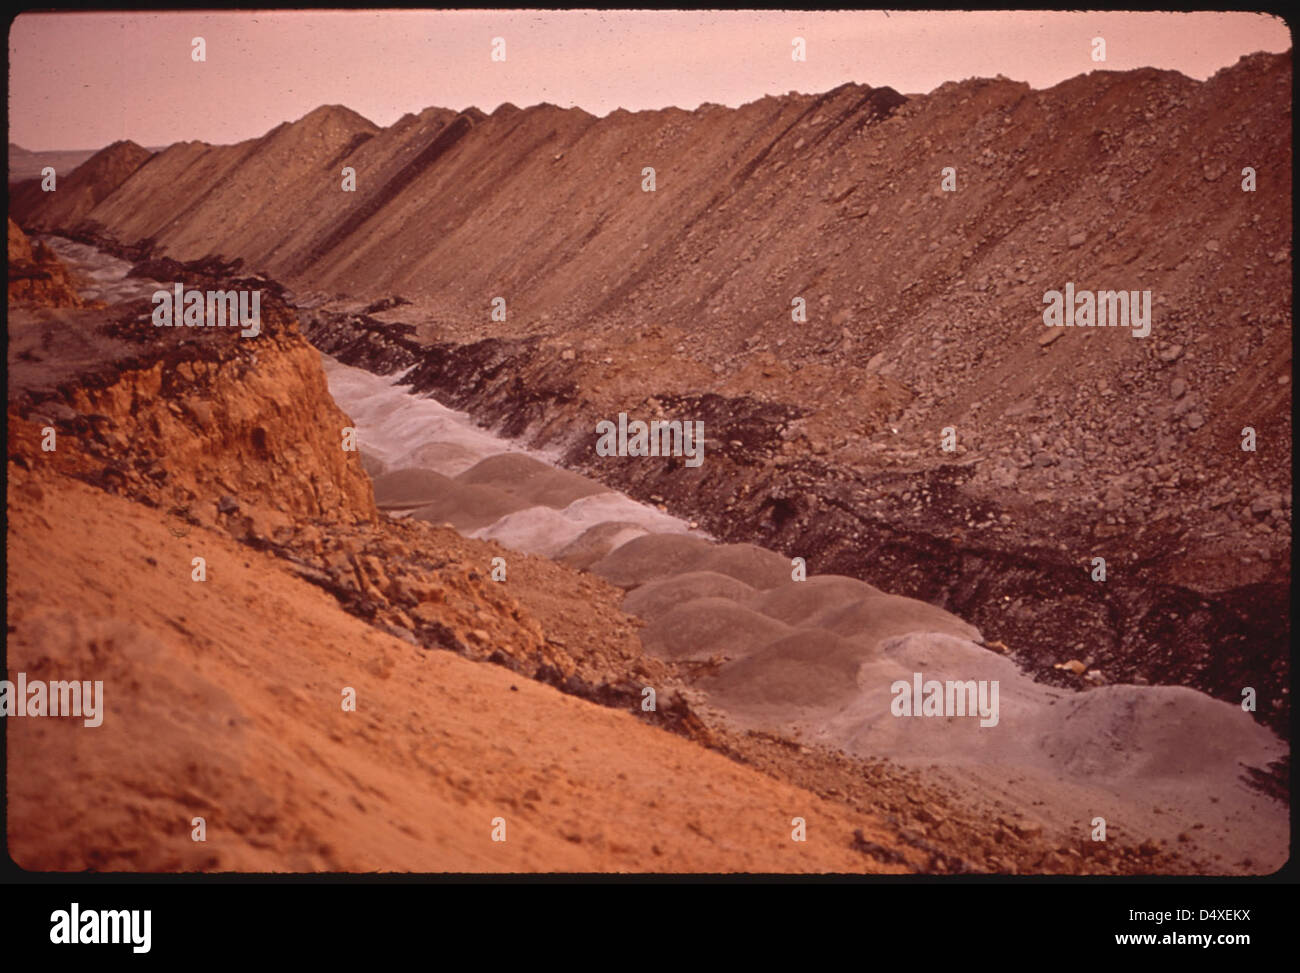 La mine Navajo de l'Utah Construction and Mining Company. Le paysage désolate est un résultat caractéristique de l'exploitation minière en bandes 06/1972 Banque D'Images